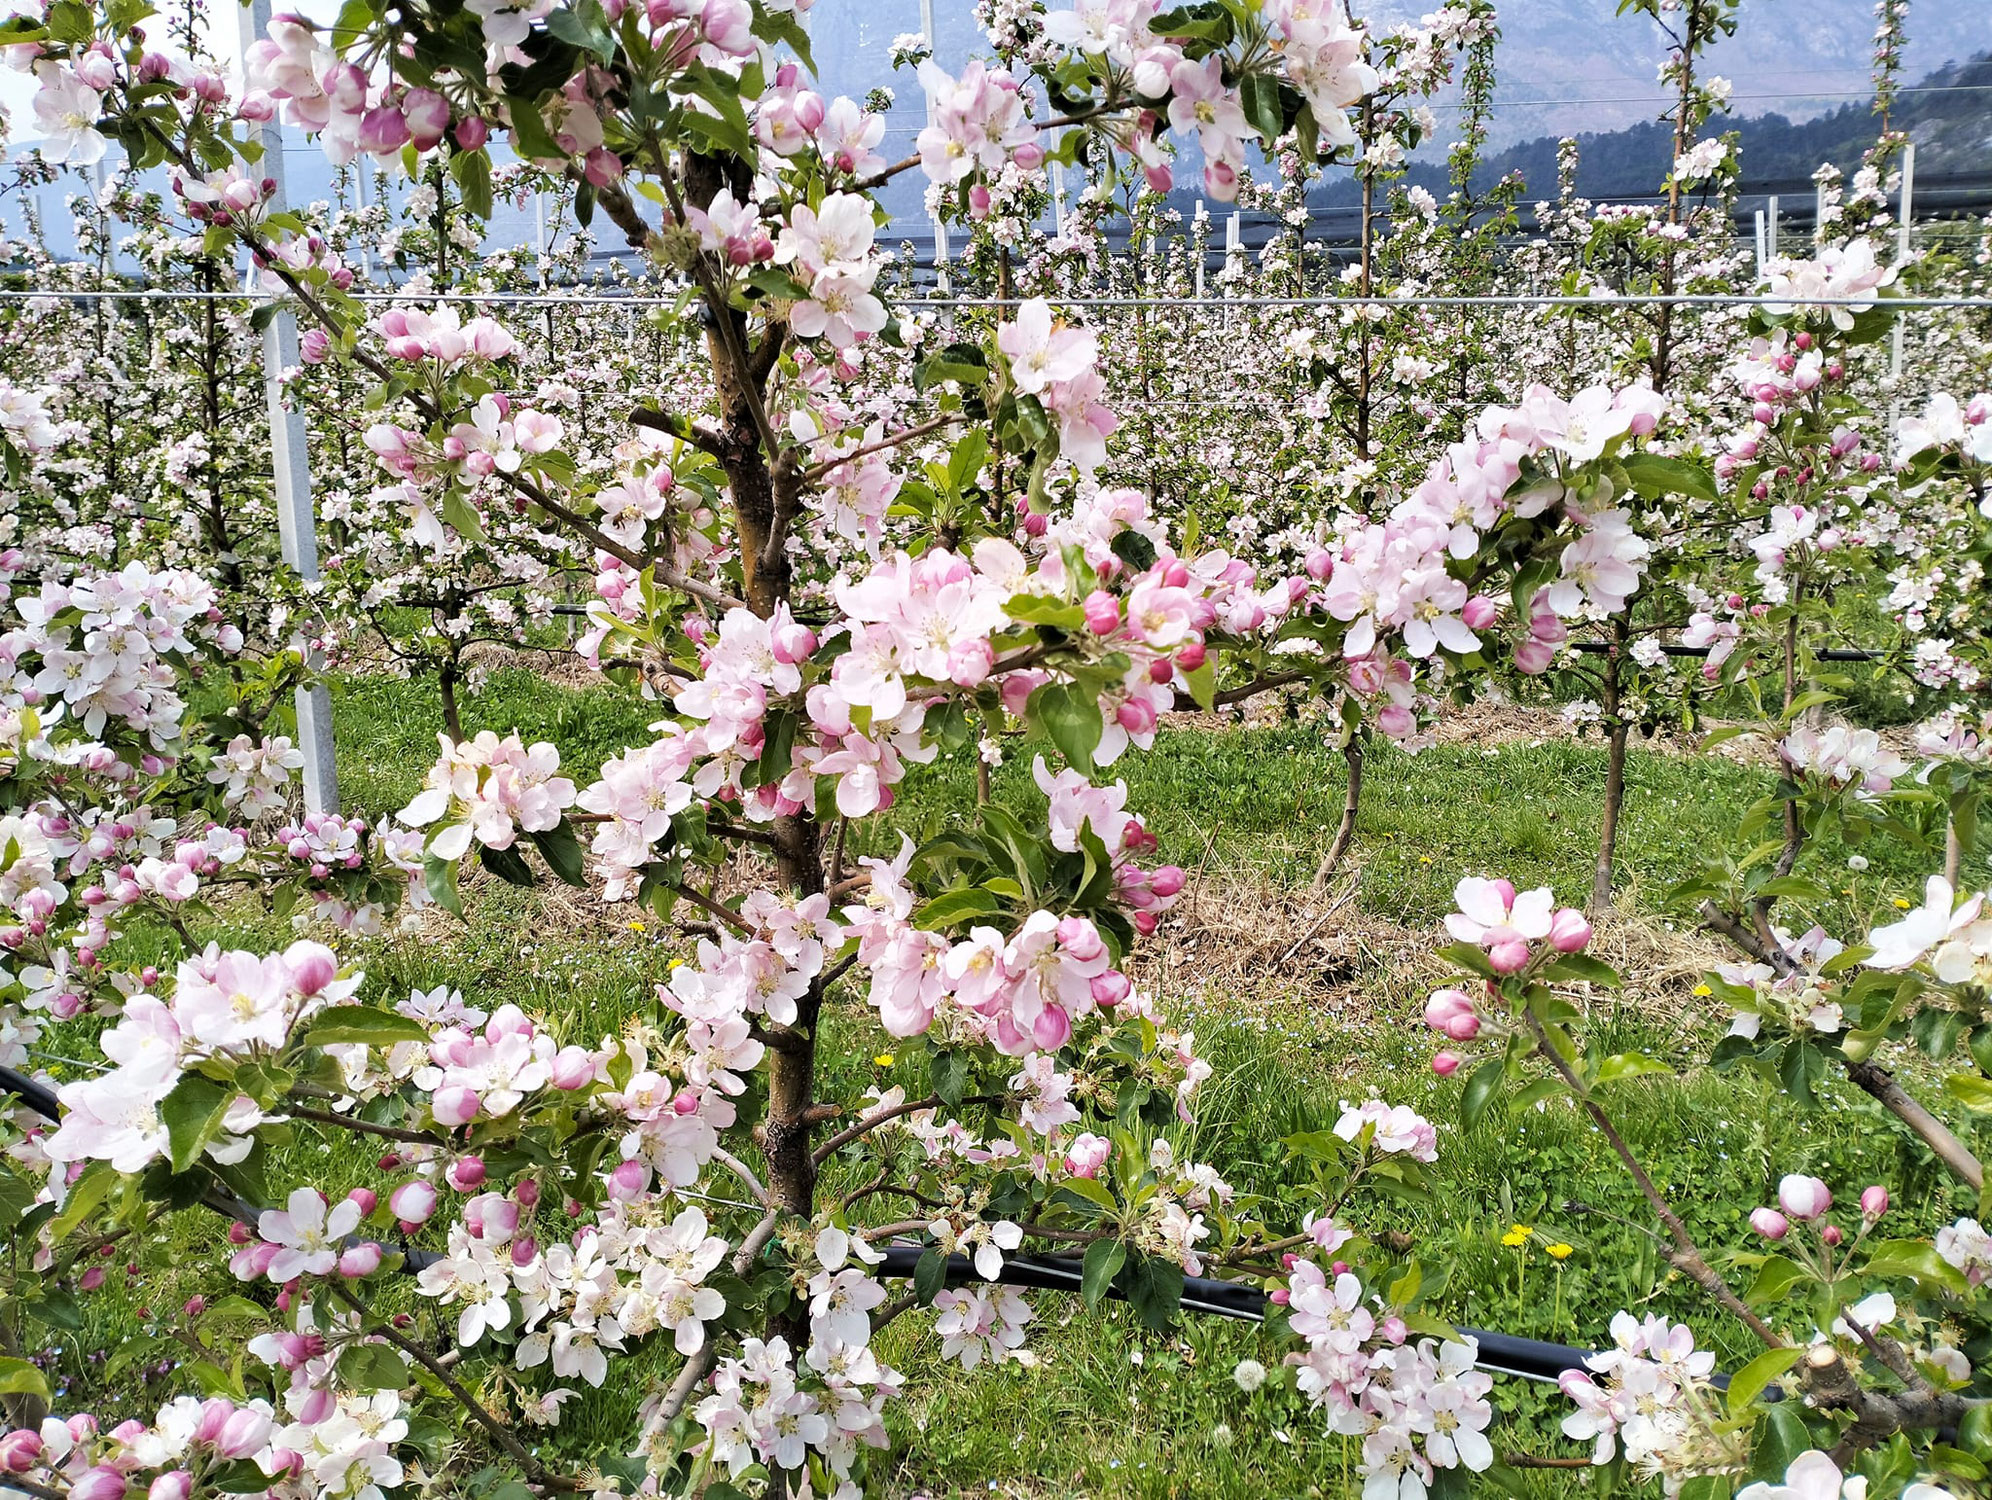 Primavera in Trentino, i 5 luoghi top da vedere